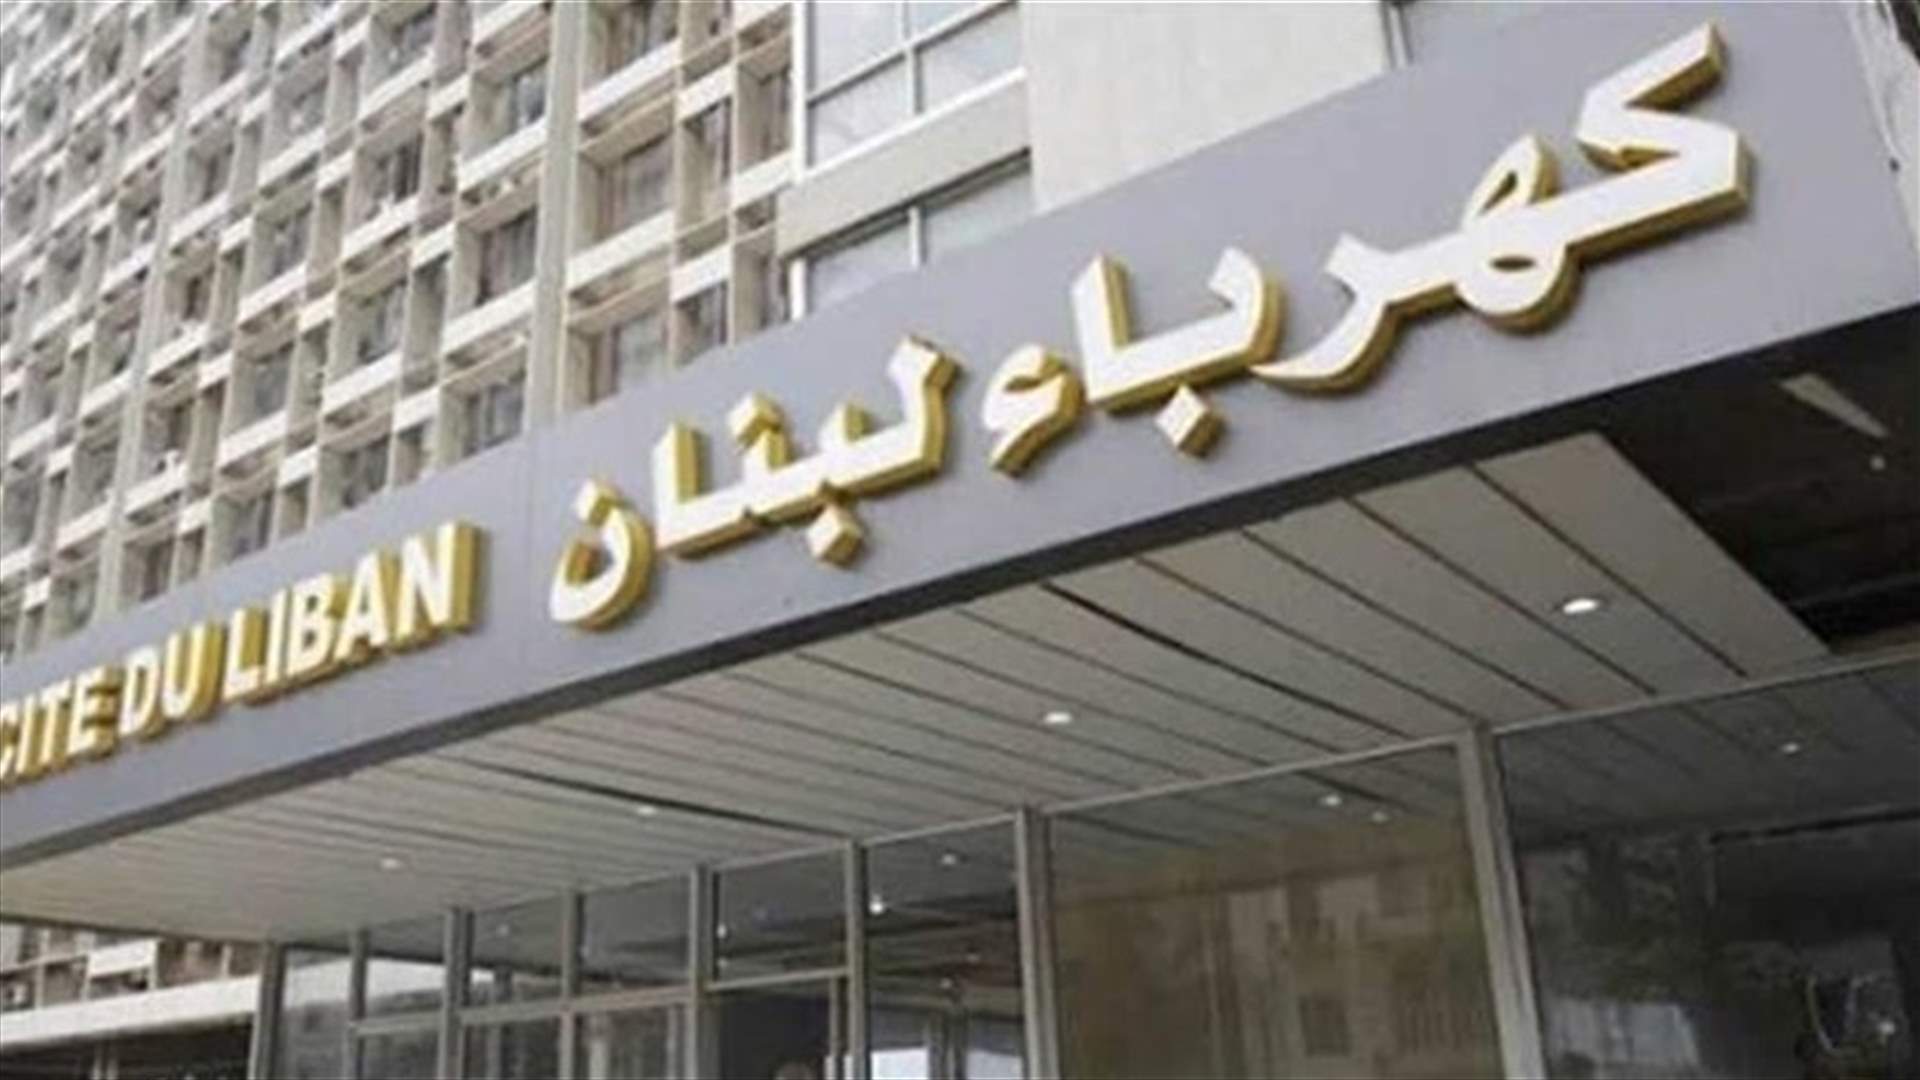 الحكومة العراقية وافقت على تزويد لبنان بالفيول لزوم مؤسسة كهرباء لبنان لمدة سنة